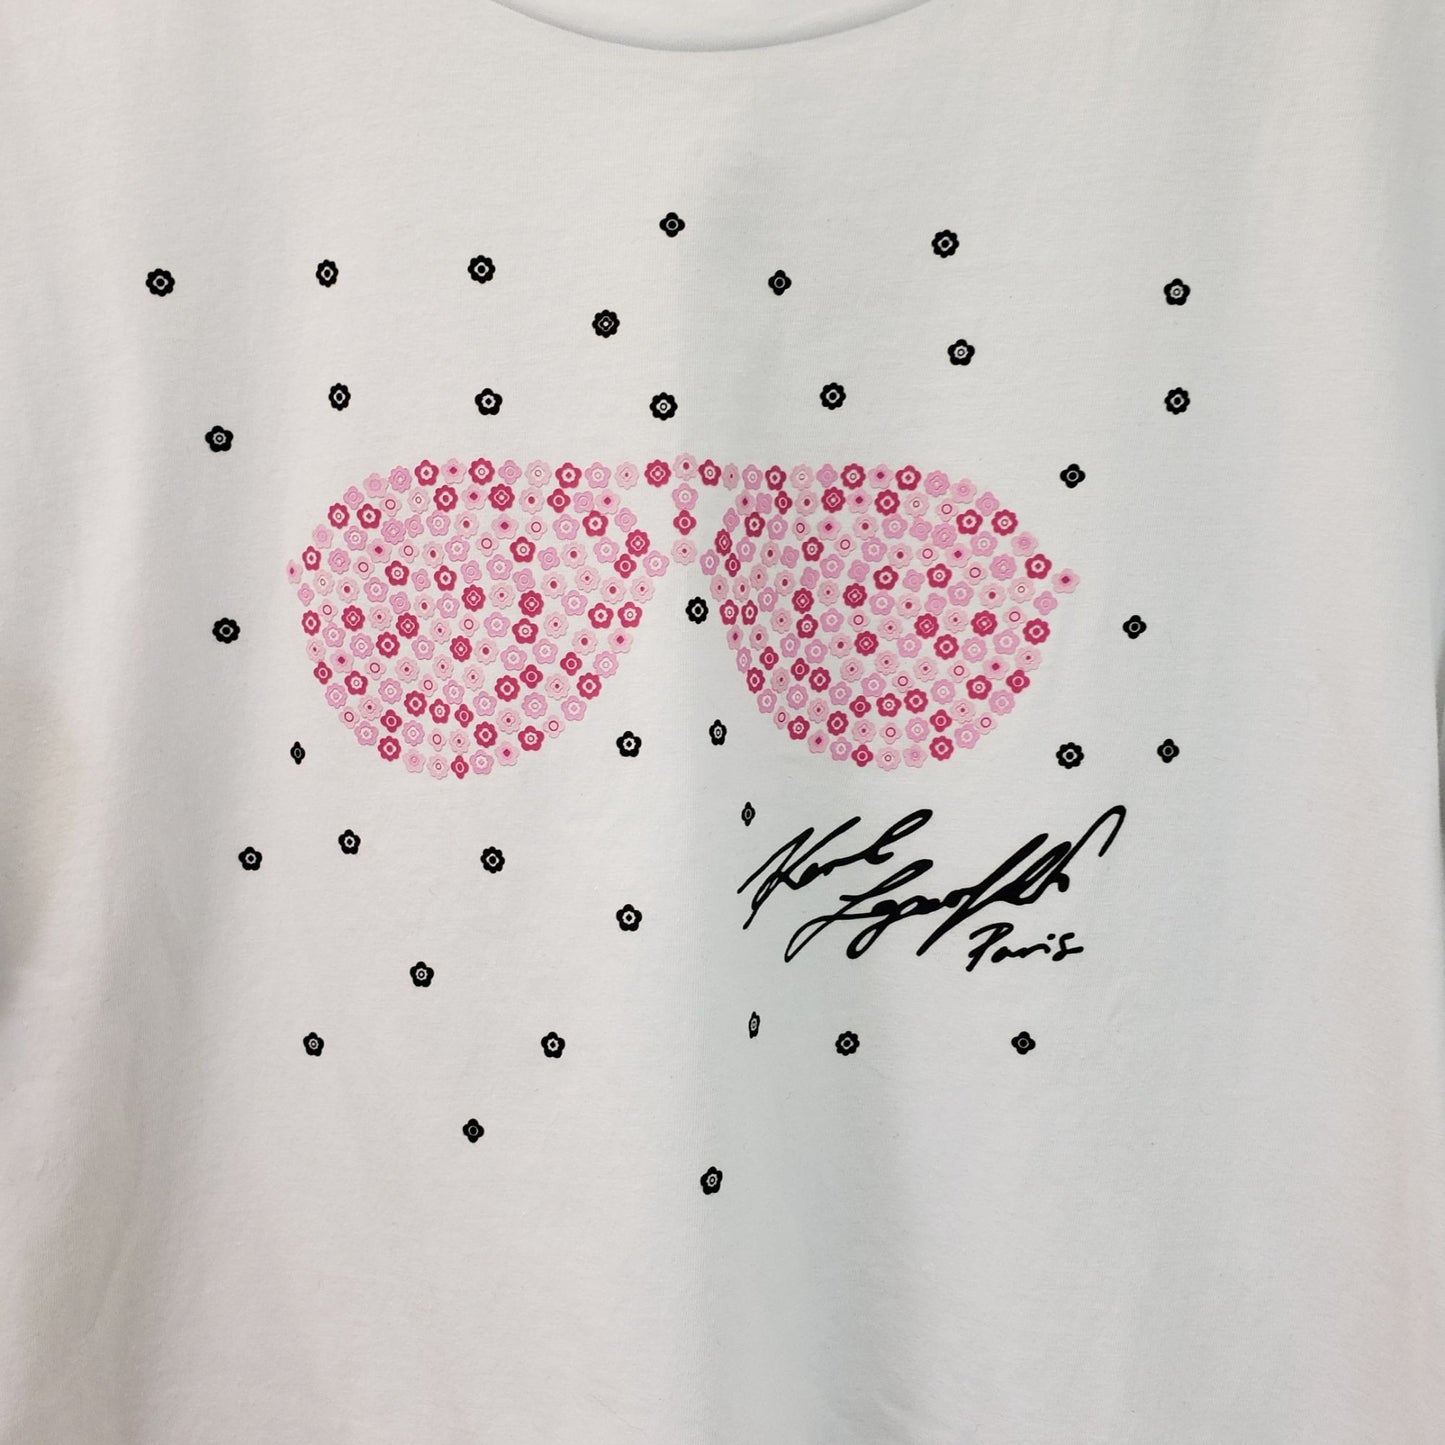 Karl Lagerfeld Floral Sunglass Print T-Shirt Size M/L